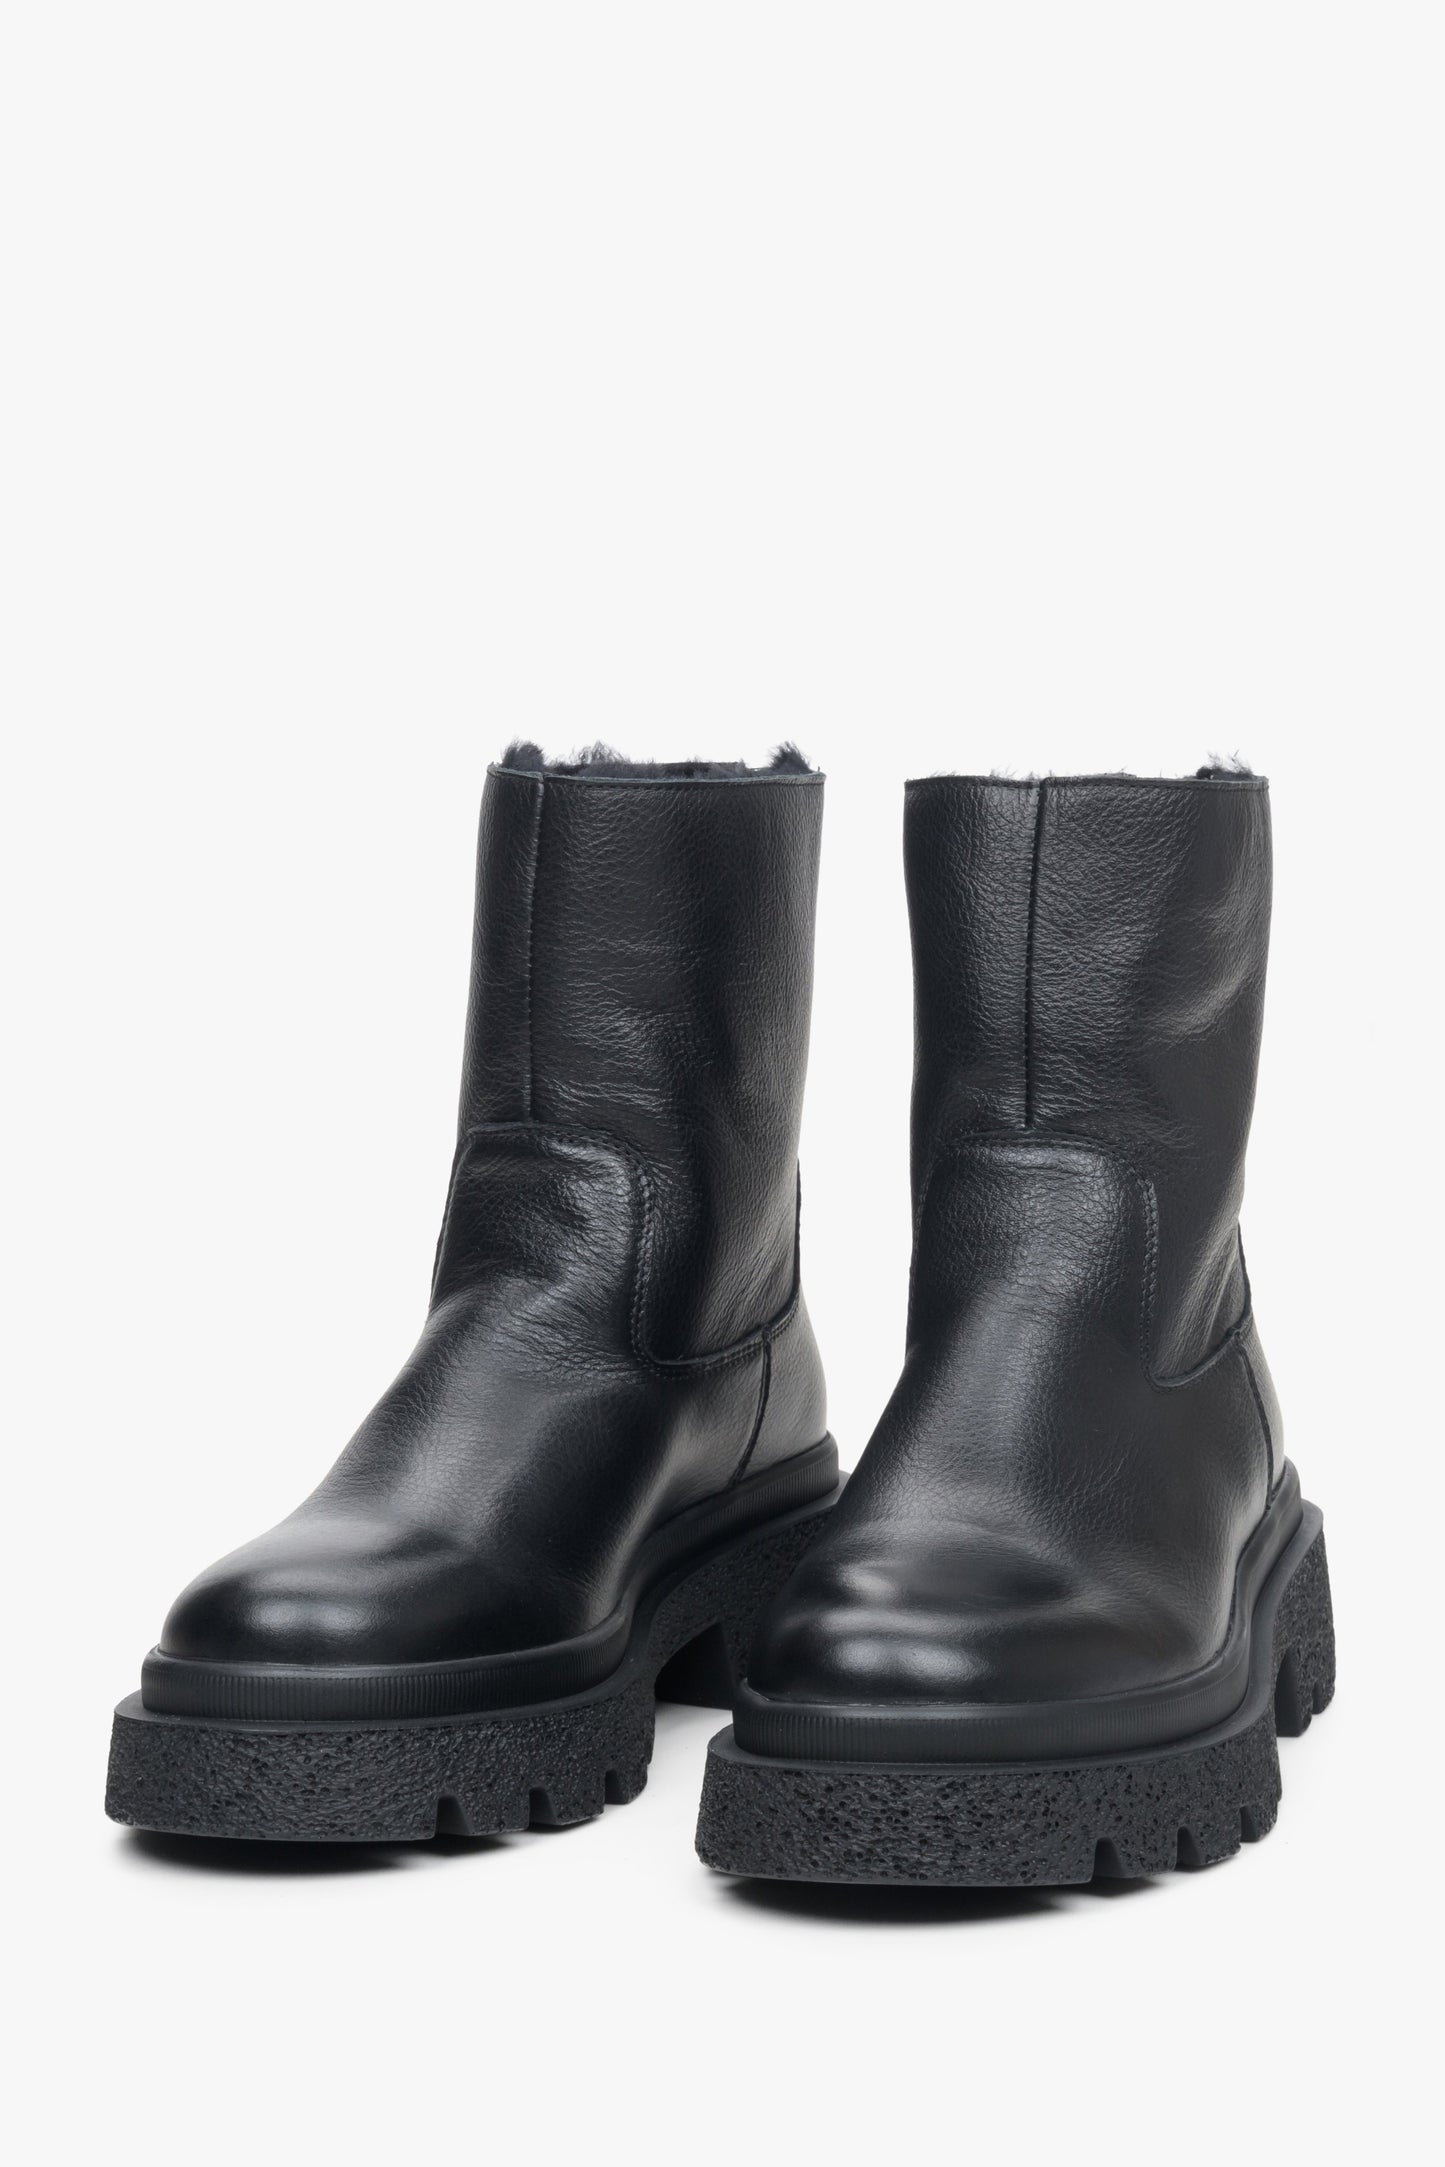 Damskie, skórzane botki na zimę w kolorze czarnym Estro - zbliżenie na czubek buta.